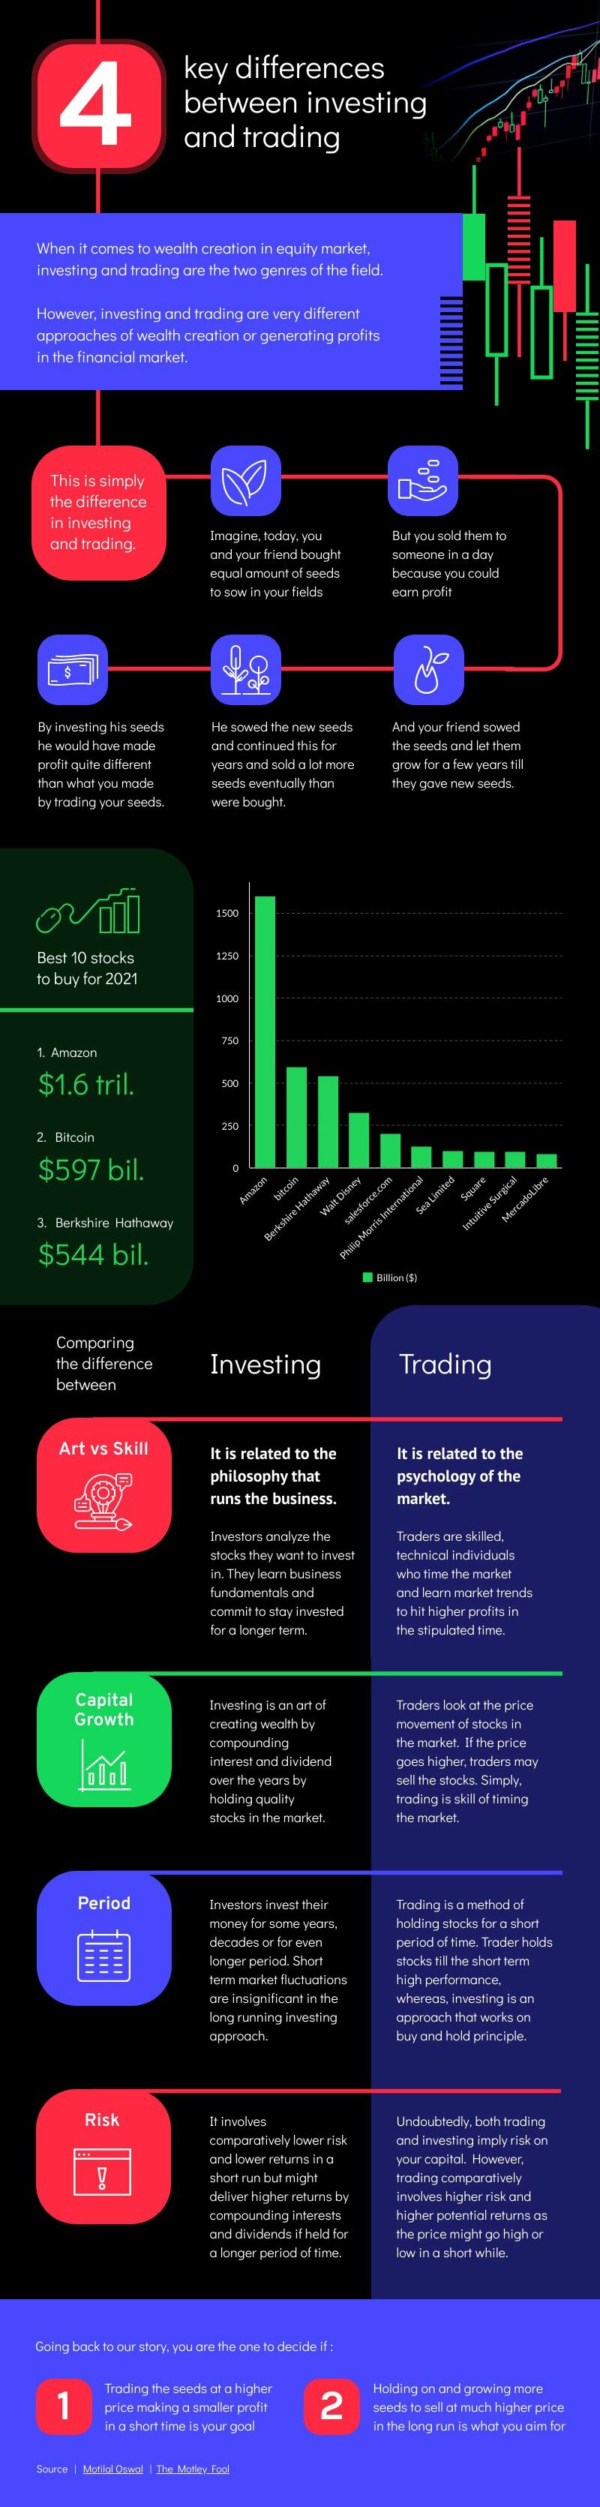 Investing vs Trading